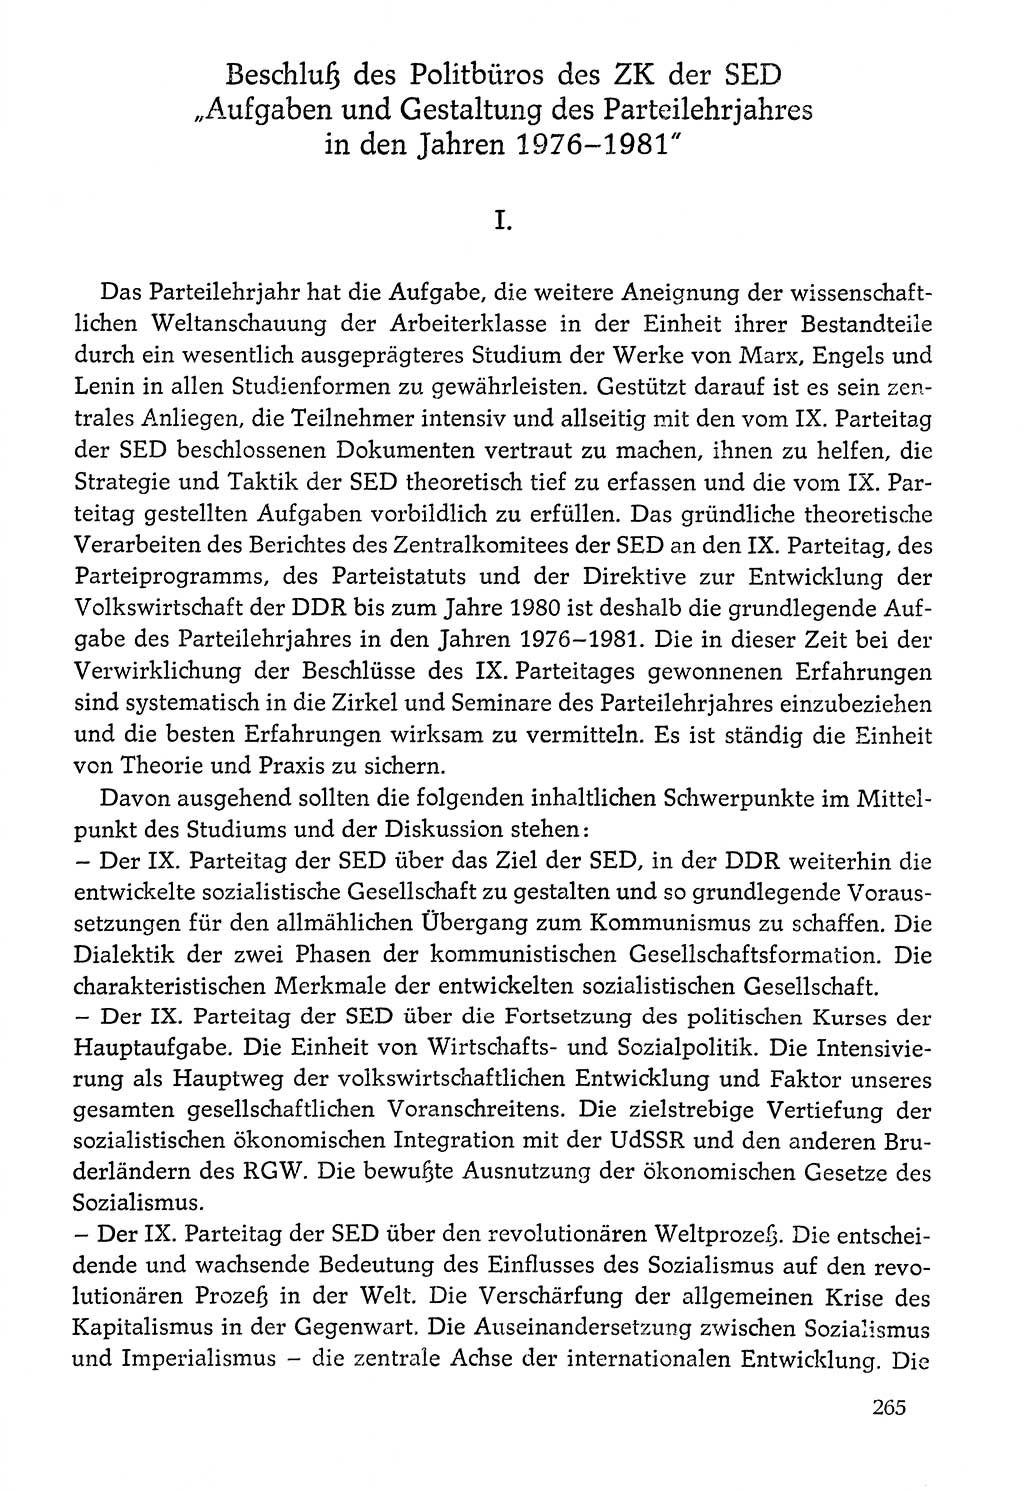 Dokumente der Sozialistischen Einheitspartei Deutschlands (SED) [Deutsche Demokratische Republik (DDR)] 1976-1977, Seite 265 (Dok. SED DDR 1976-1977, S. 265)